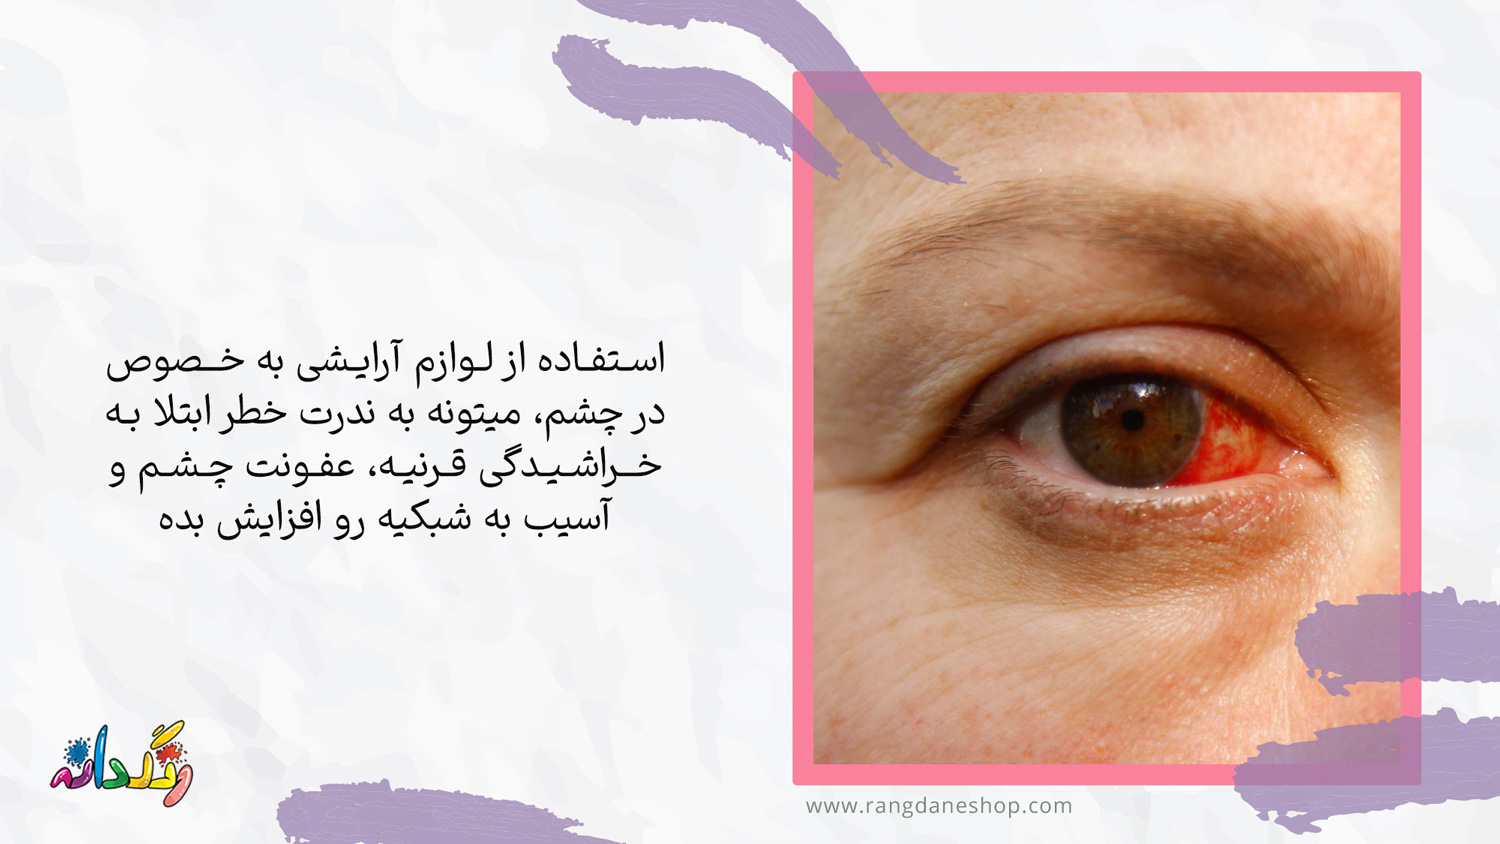 خراشیدگی قرنیه چشم یکی از عوارض استفاده مداوم از لوازم ارایشی بر روی چشم